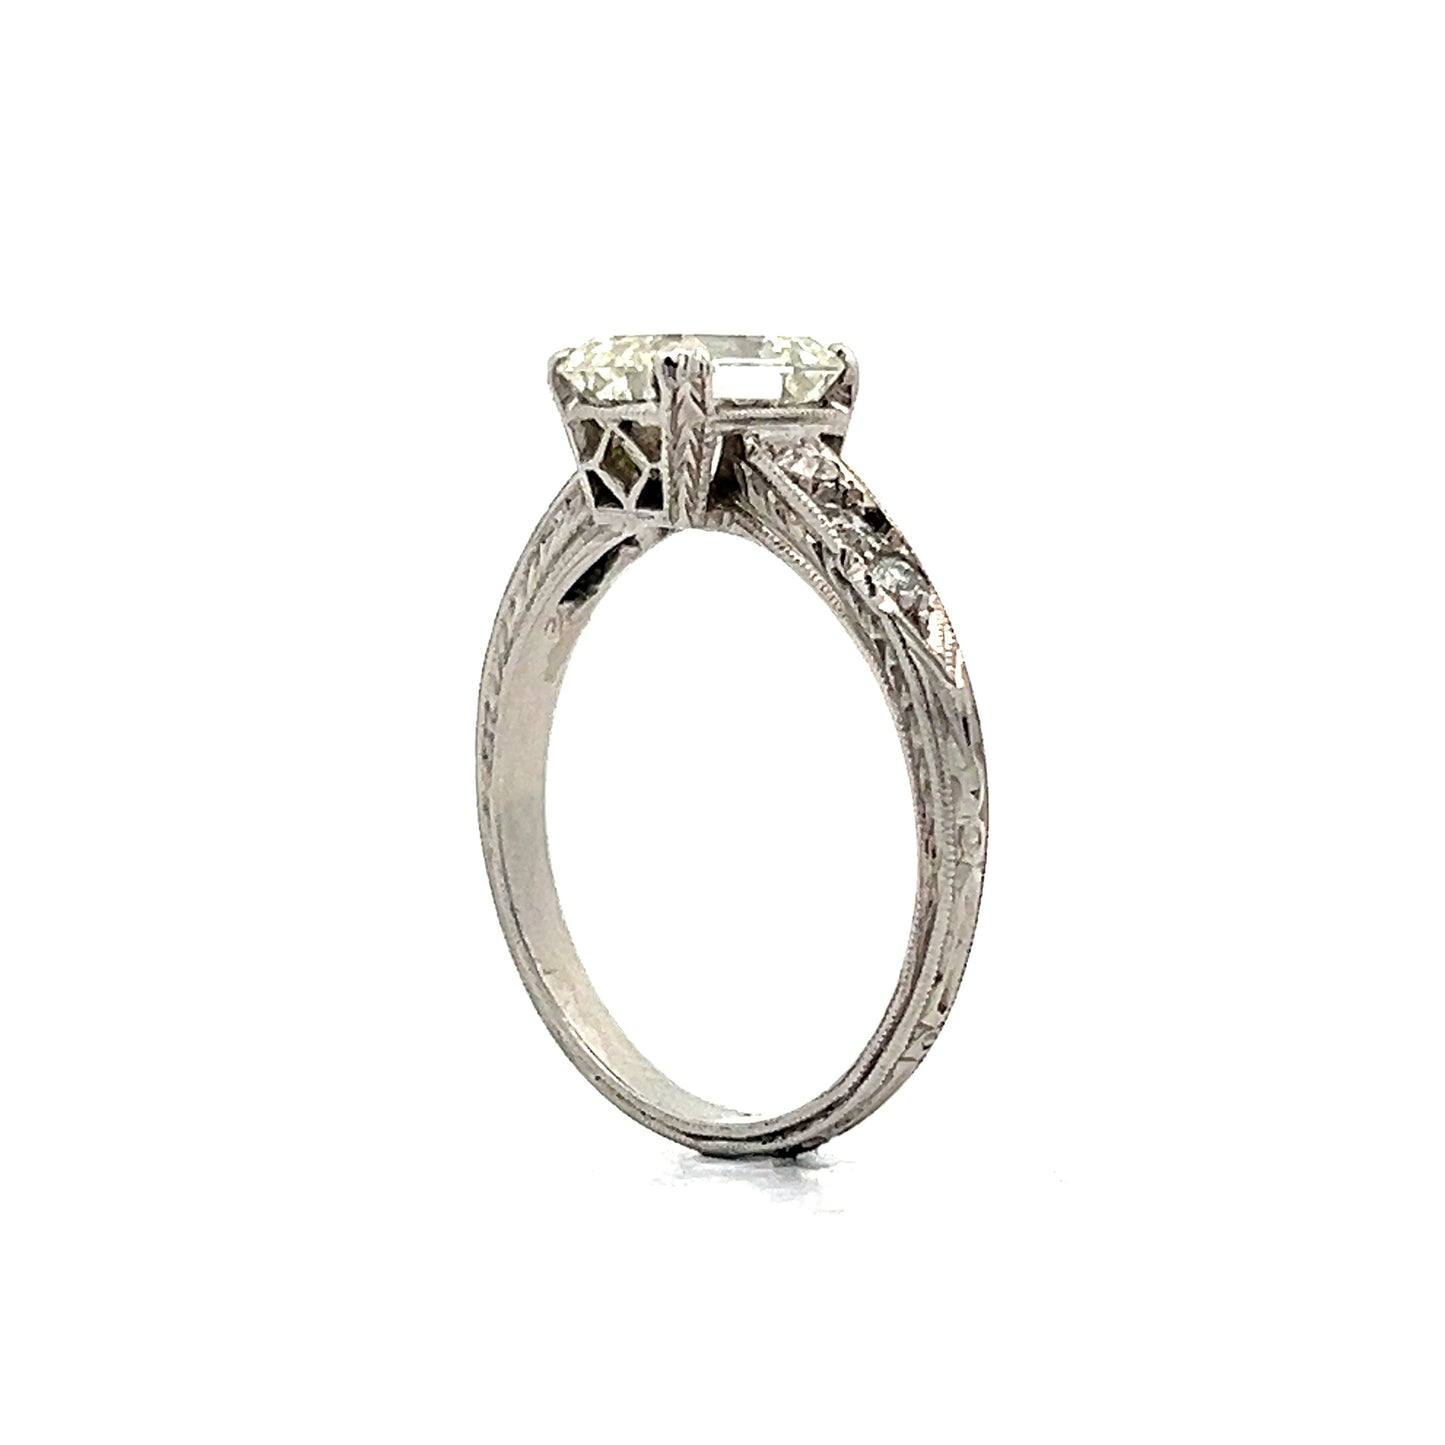 2.07 Art Deco Inspired Emerald Cut Diamond Engagement Ring in Platinum